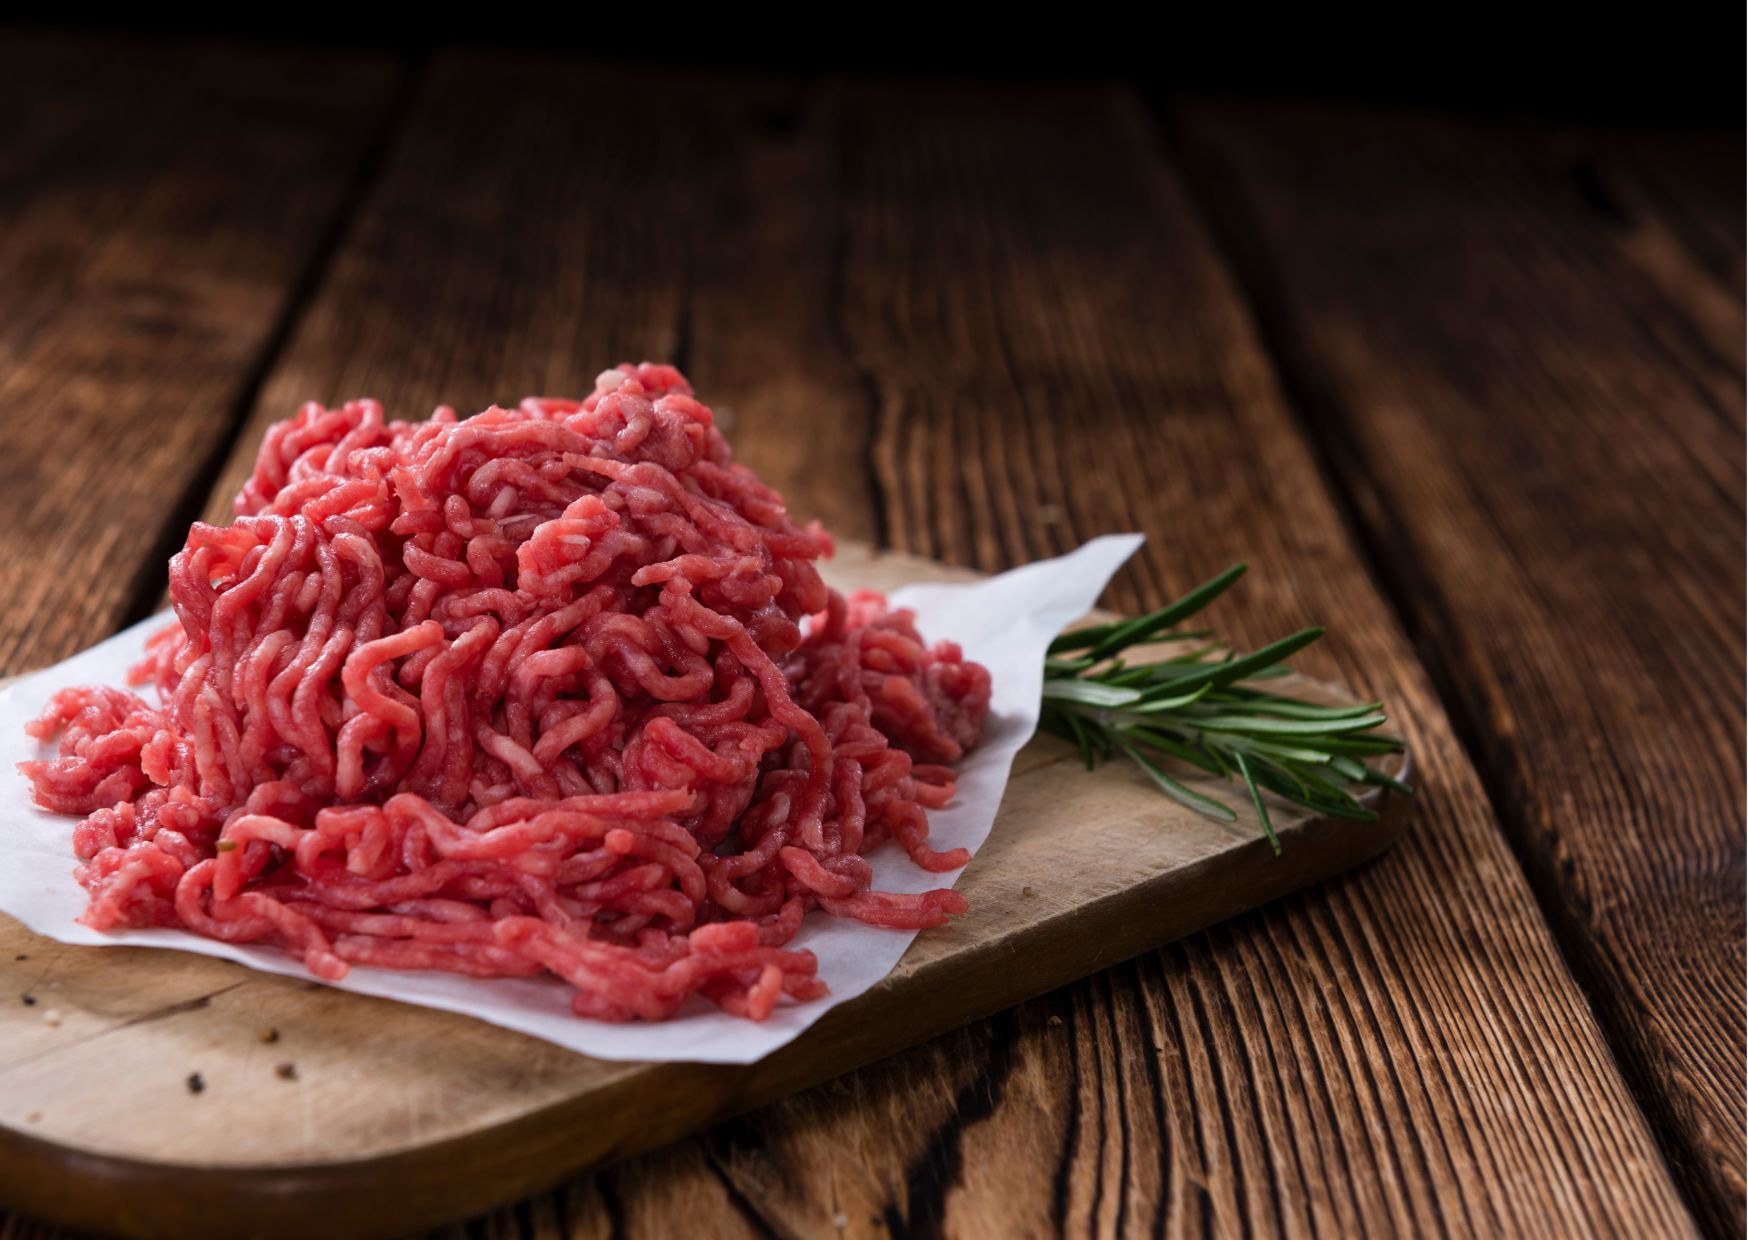 Aprenda como escolher a carne moída certa no mercado: não caia mais nas carnes velhas